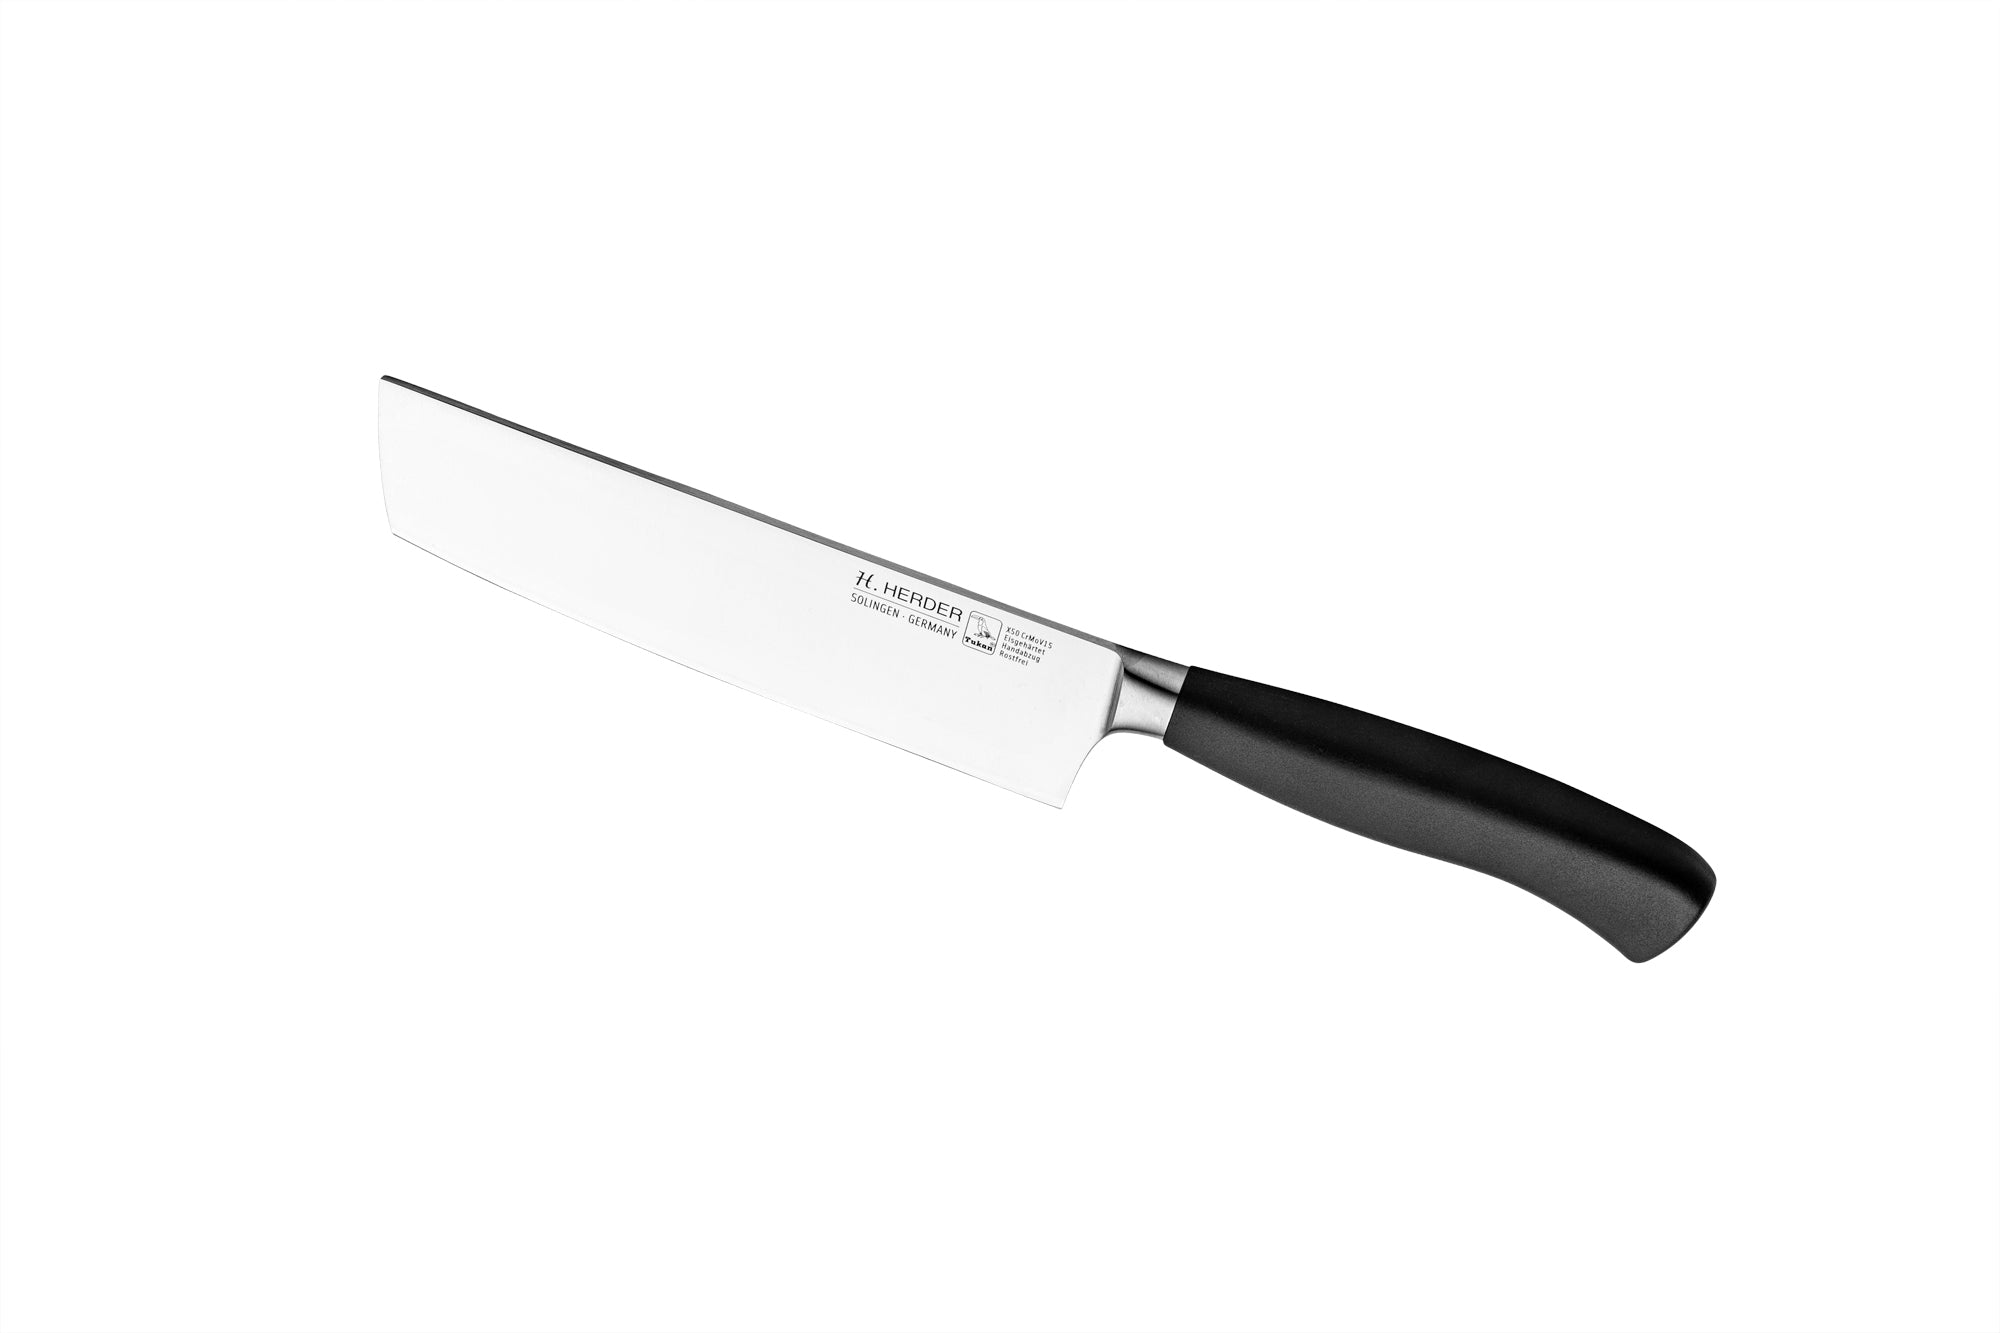 Cuchillo Nakiri Eterno Gastro, longitud de la hoja 17cm